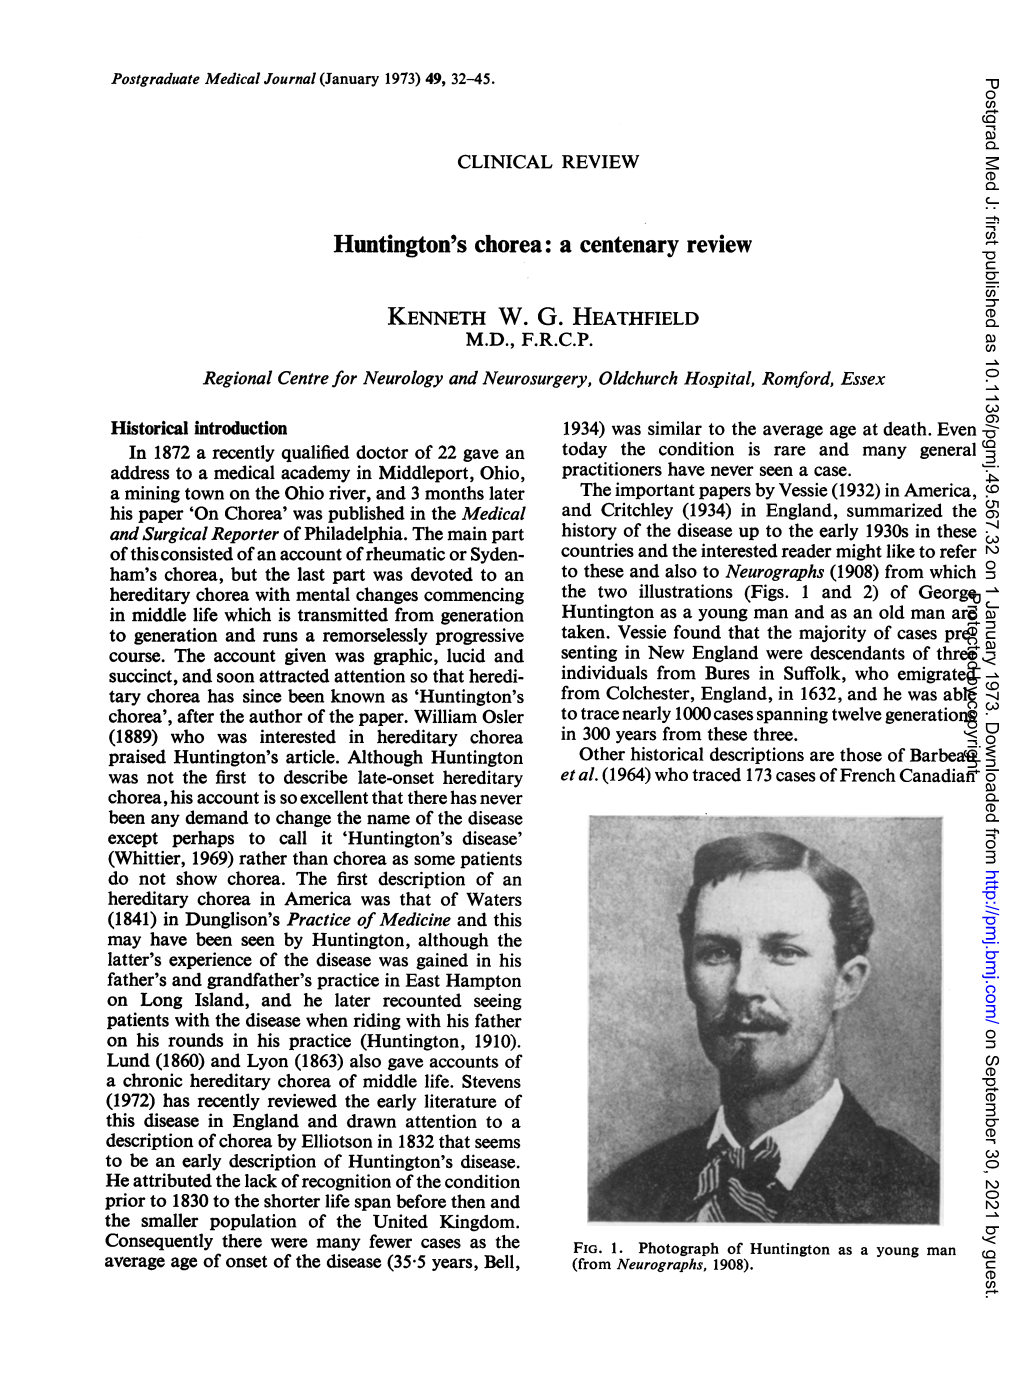 Huntington's Chorea: a Centenary Review KENNETH W. G. HEATHFIELD